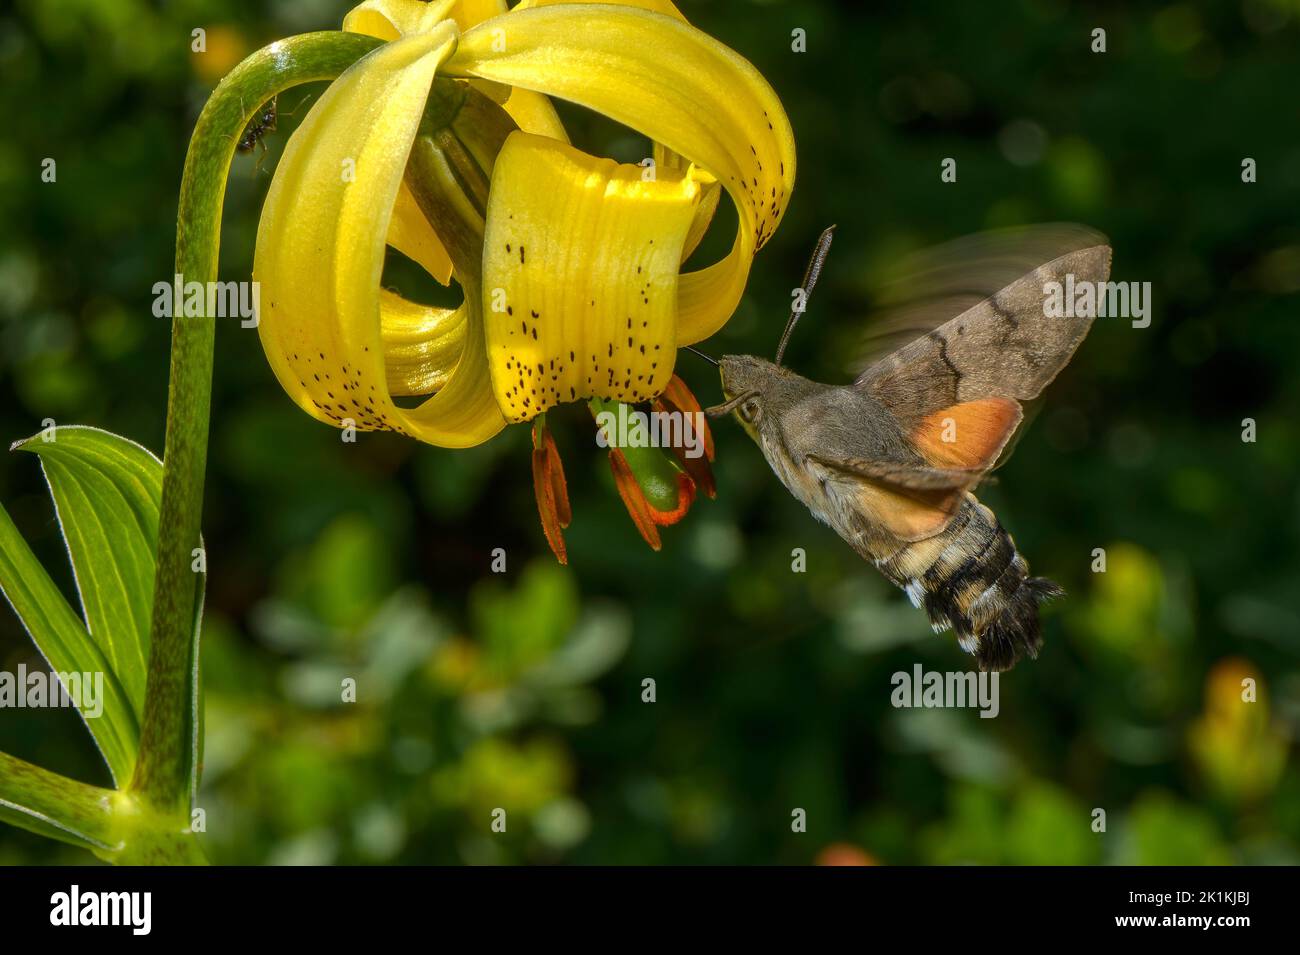 La polilla del halcón de las aves humming, Macroglossum stellatarum visitando las flores del lirio pirenaico, Lilium pyrenaicum; Pirineos. Foto de stock